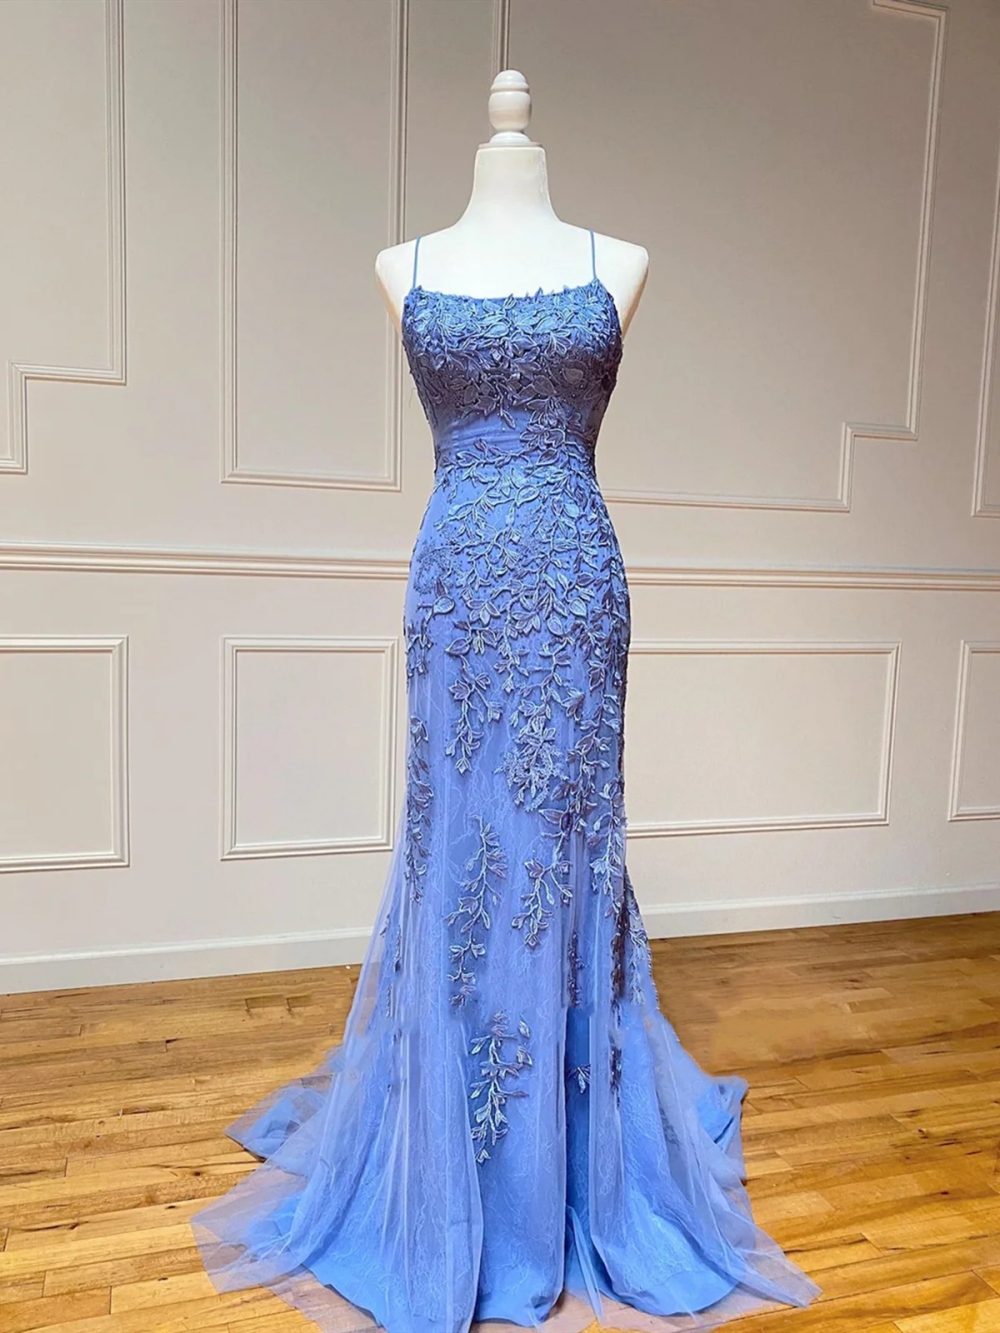 Blue Mermaid Style, Lace Applique Diamond, U-neck Double Shoulder Strap, Backless Lace Up Party Long Dress Dress